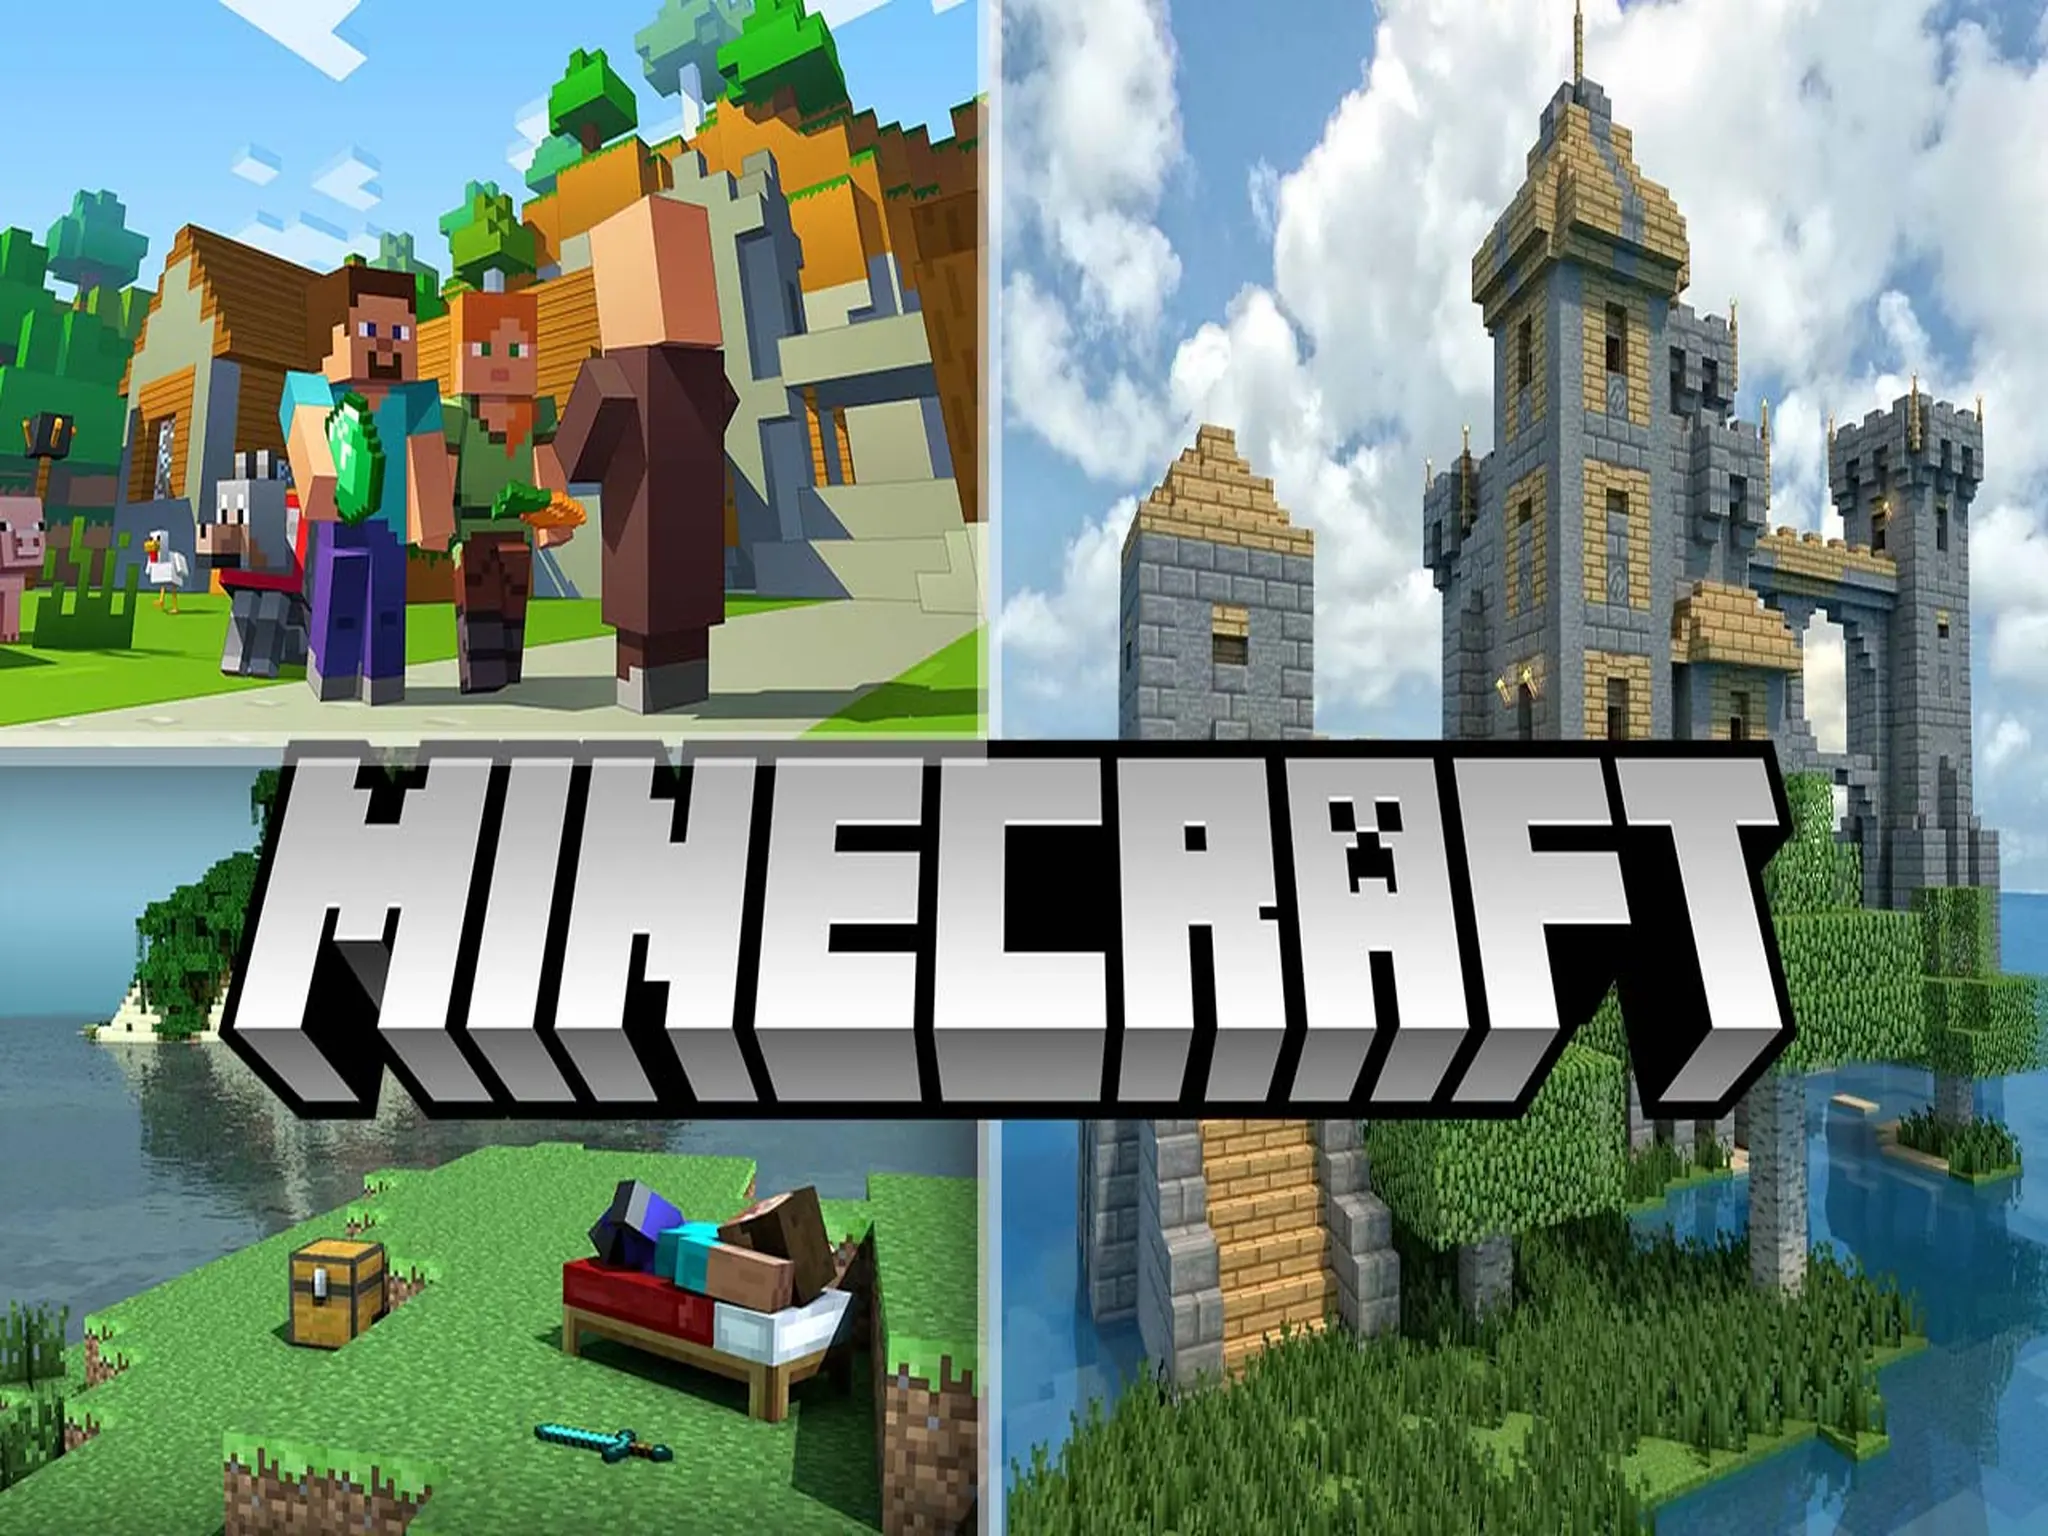 ماينكرافت Minecraft | تحميل لعبة ماين كرافت الجديد 2022 Minecraft.. أفضل لعبة في العالم ماينكرافت للهواتف